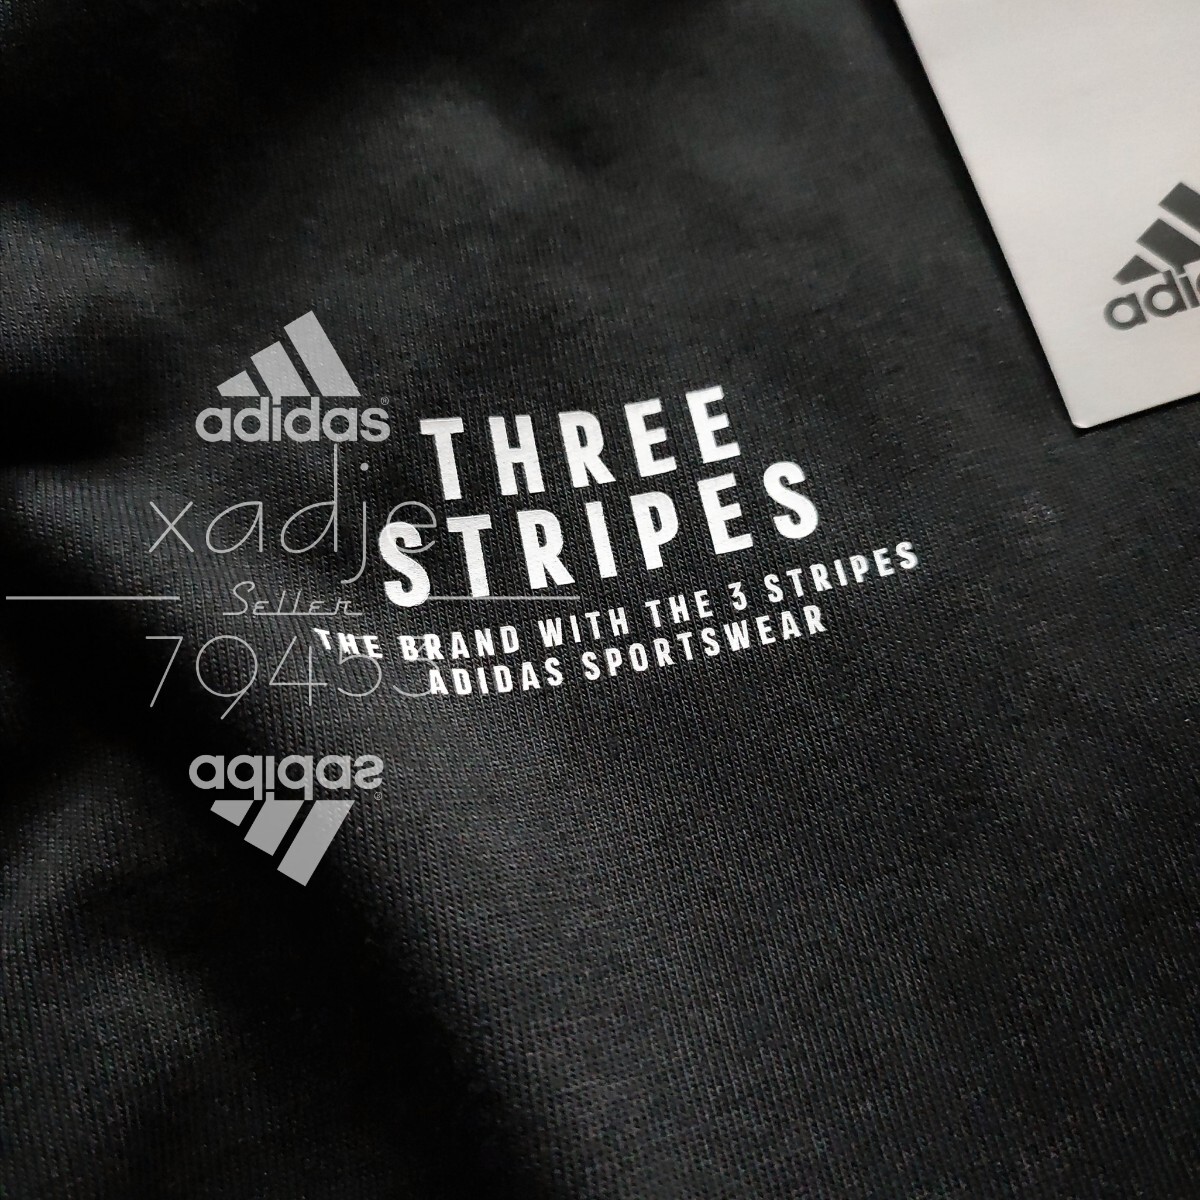  новый товар стандартный товар adidas Adidas 2 шт. комплект длинный рукав long T принт THREE STRIPES чёрный черный белый белый Logo принт толстый M